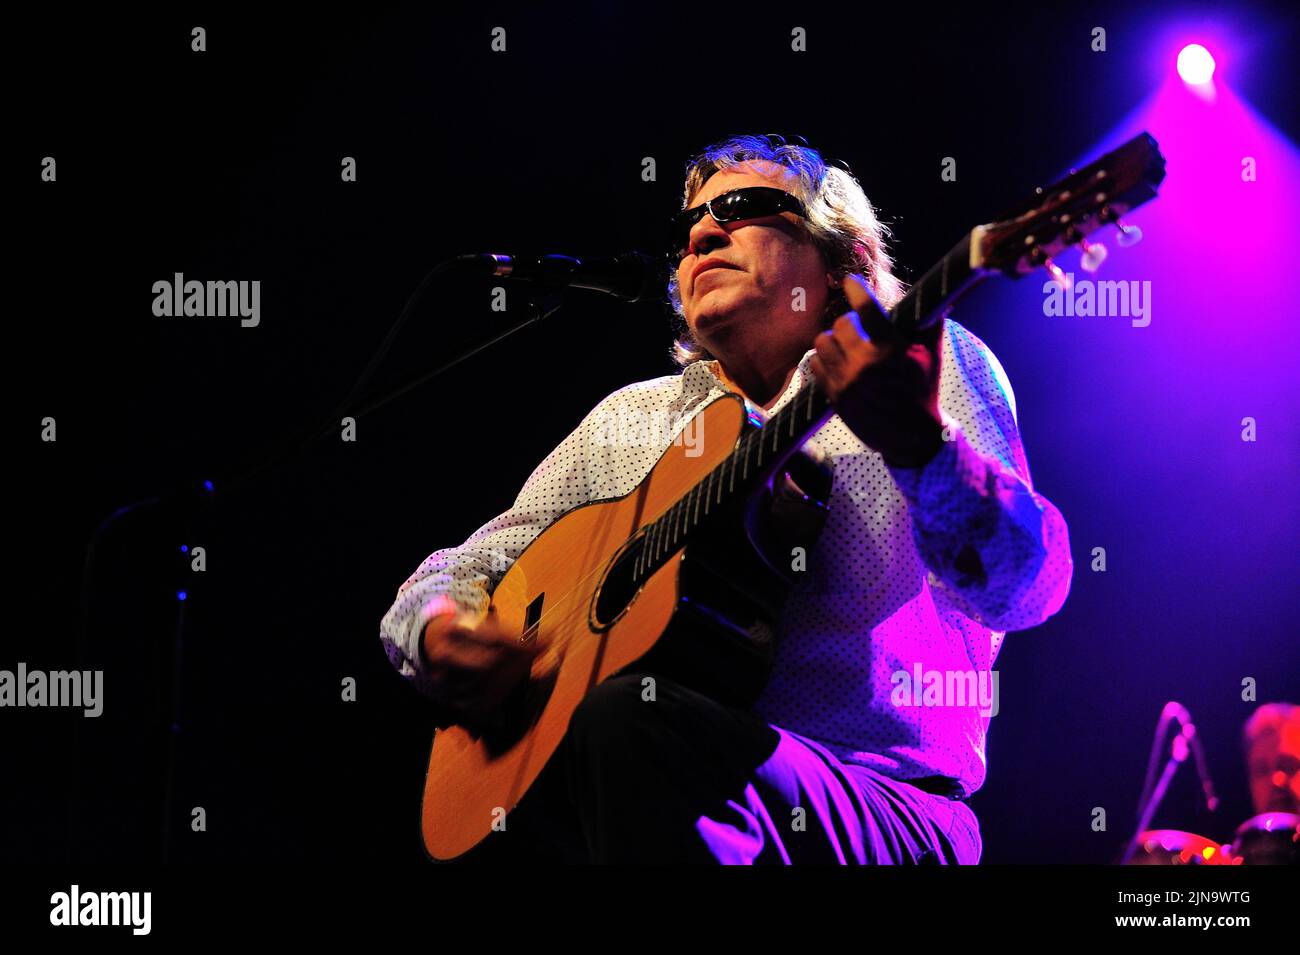 Jose Feliciano, nato permanentemente cieco a causa del glaucoma congenito, è esibito sul palco durante un concerto dal vivo, Jose Feliciano (10 settembre 1945) è un chitarrista, cantante e compositore virtuoso portoricano, foto Kazimierz Jurewicz Foto Stock